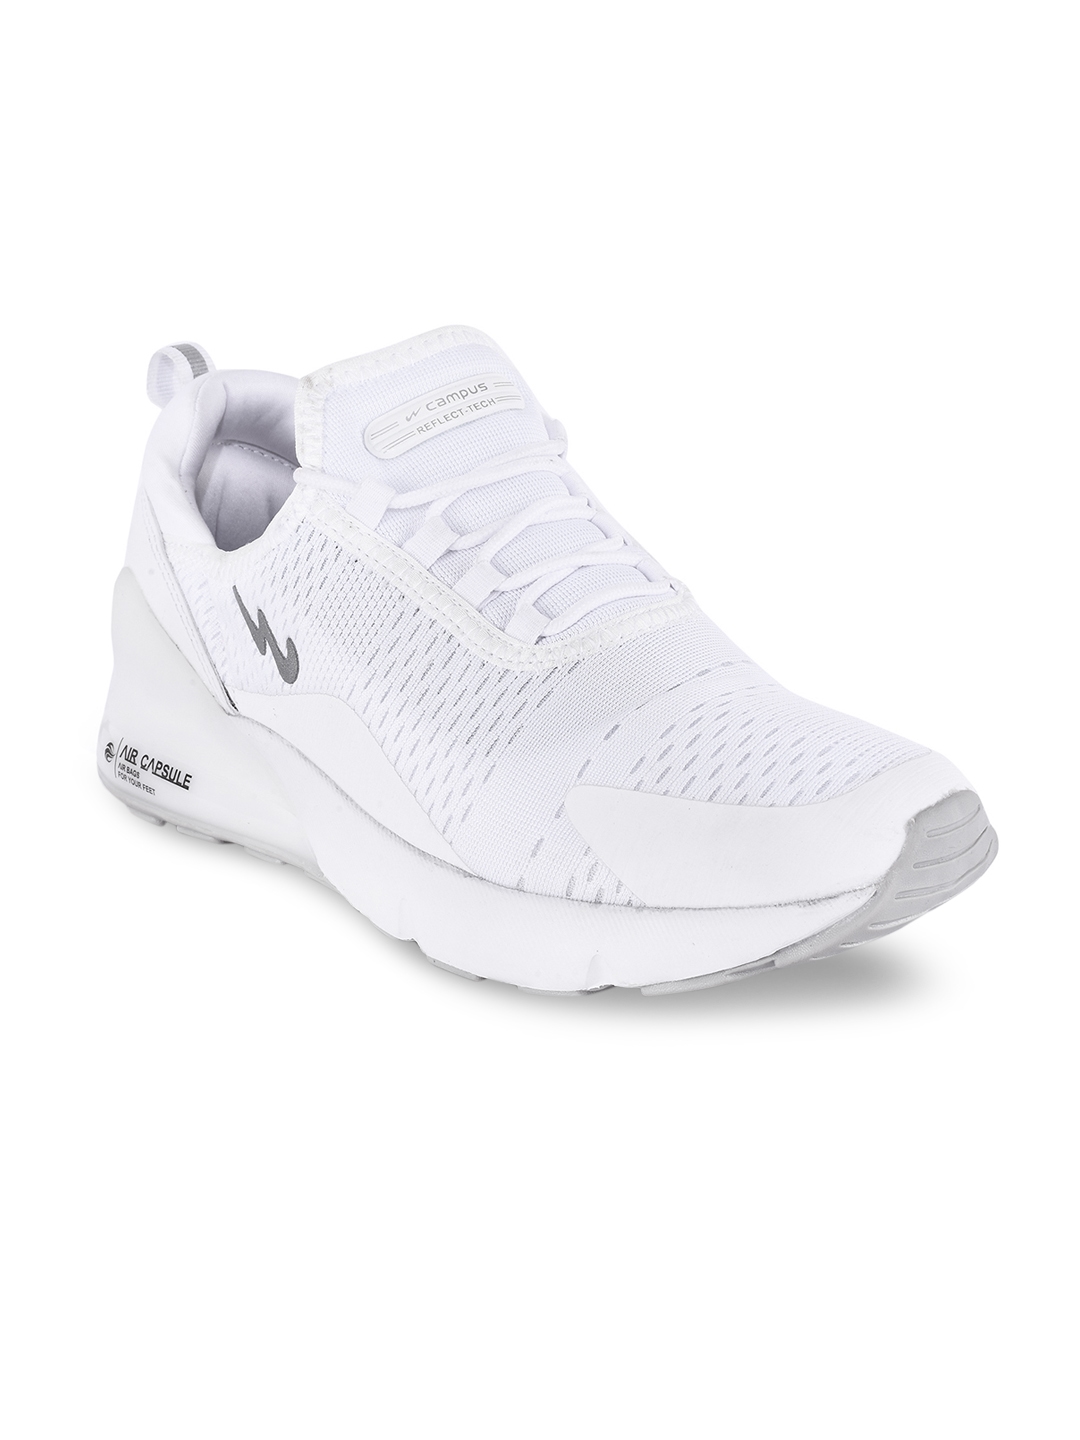 Buy Campus Men White Running Shoes 